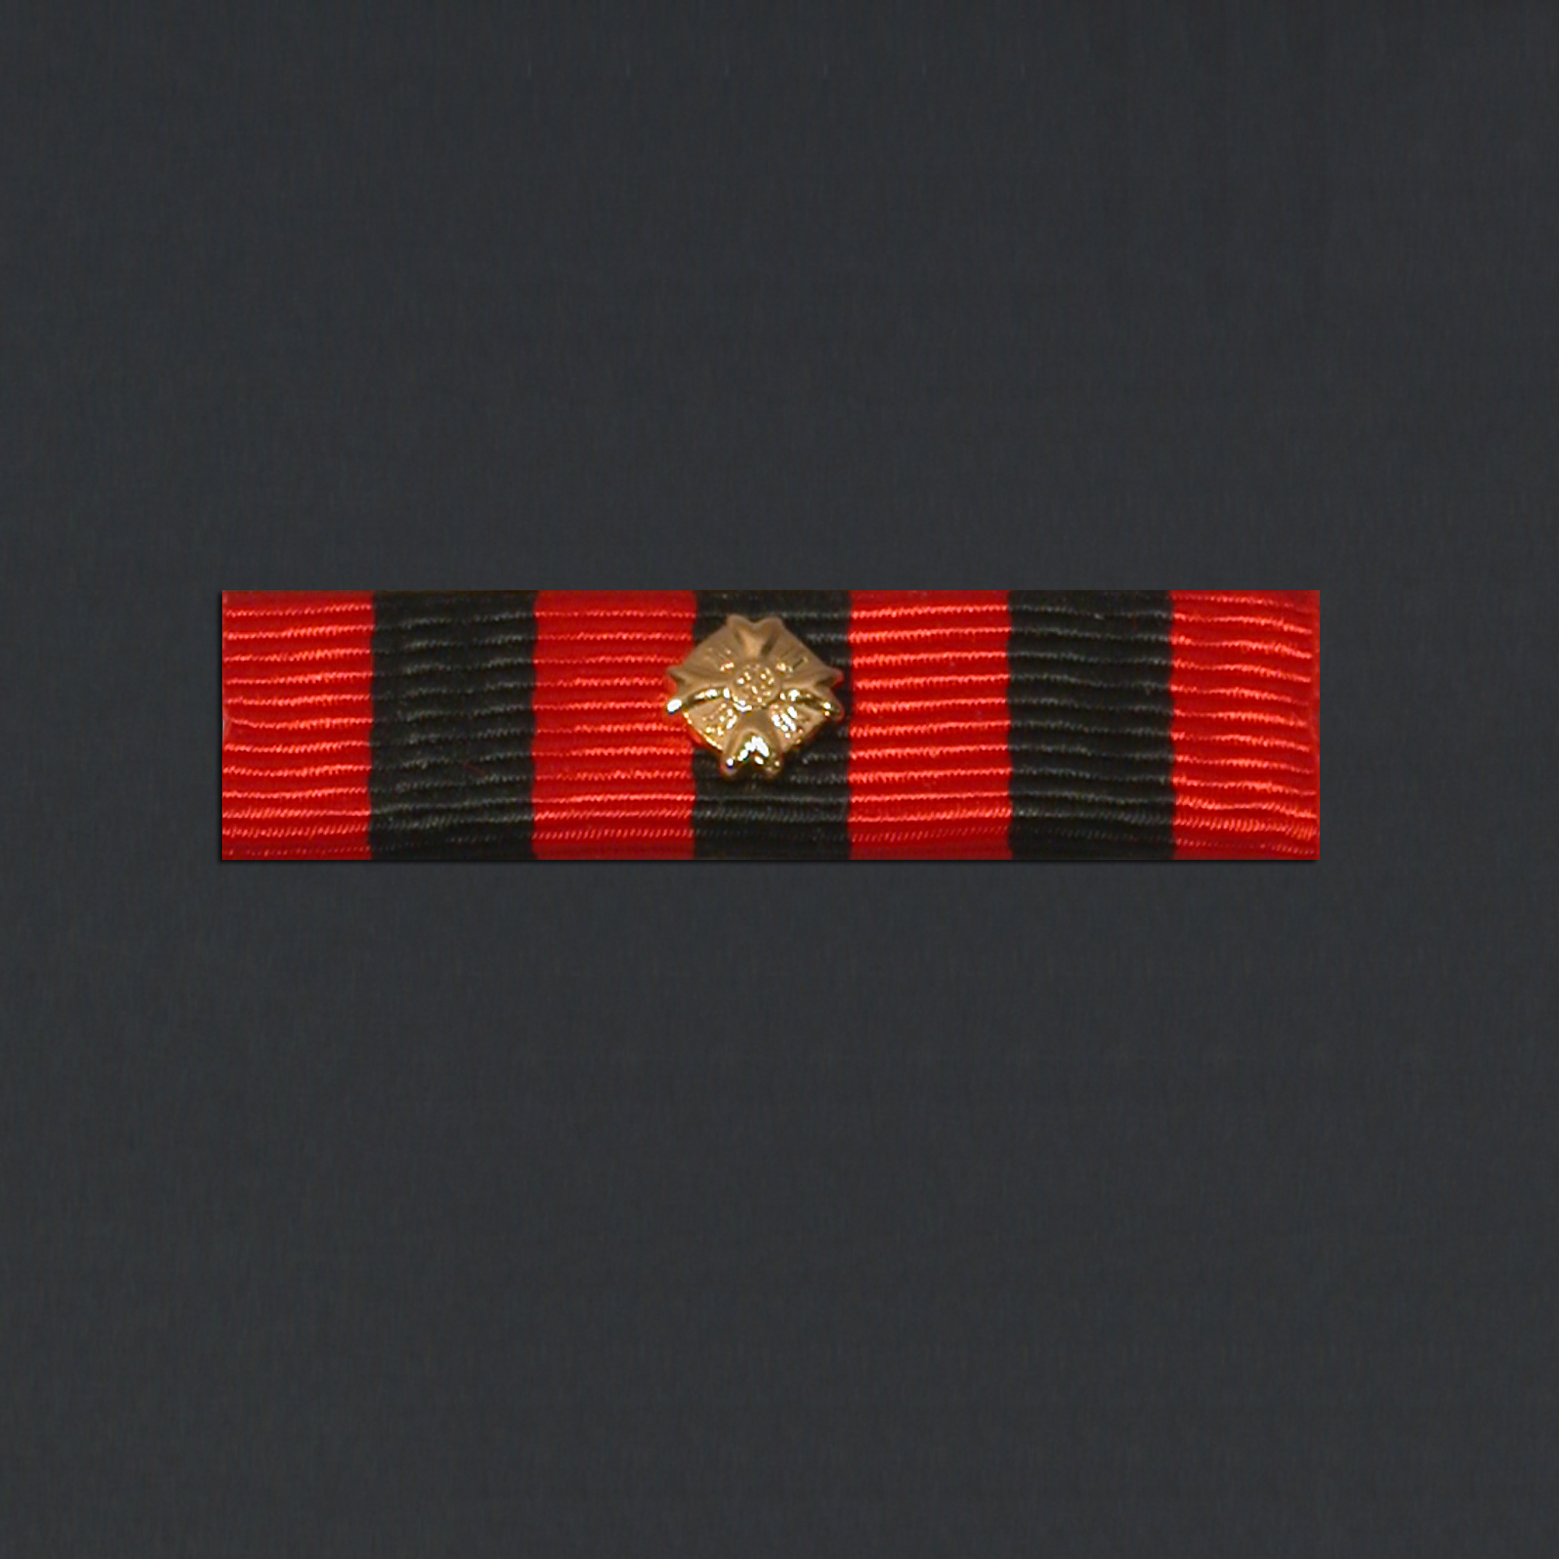 01-01-06-burgerlijk-burgerlijke-medaille-1e-klasse-uniformbaret.jpg